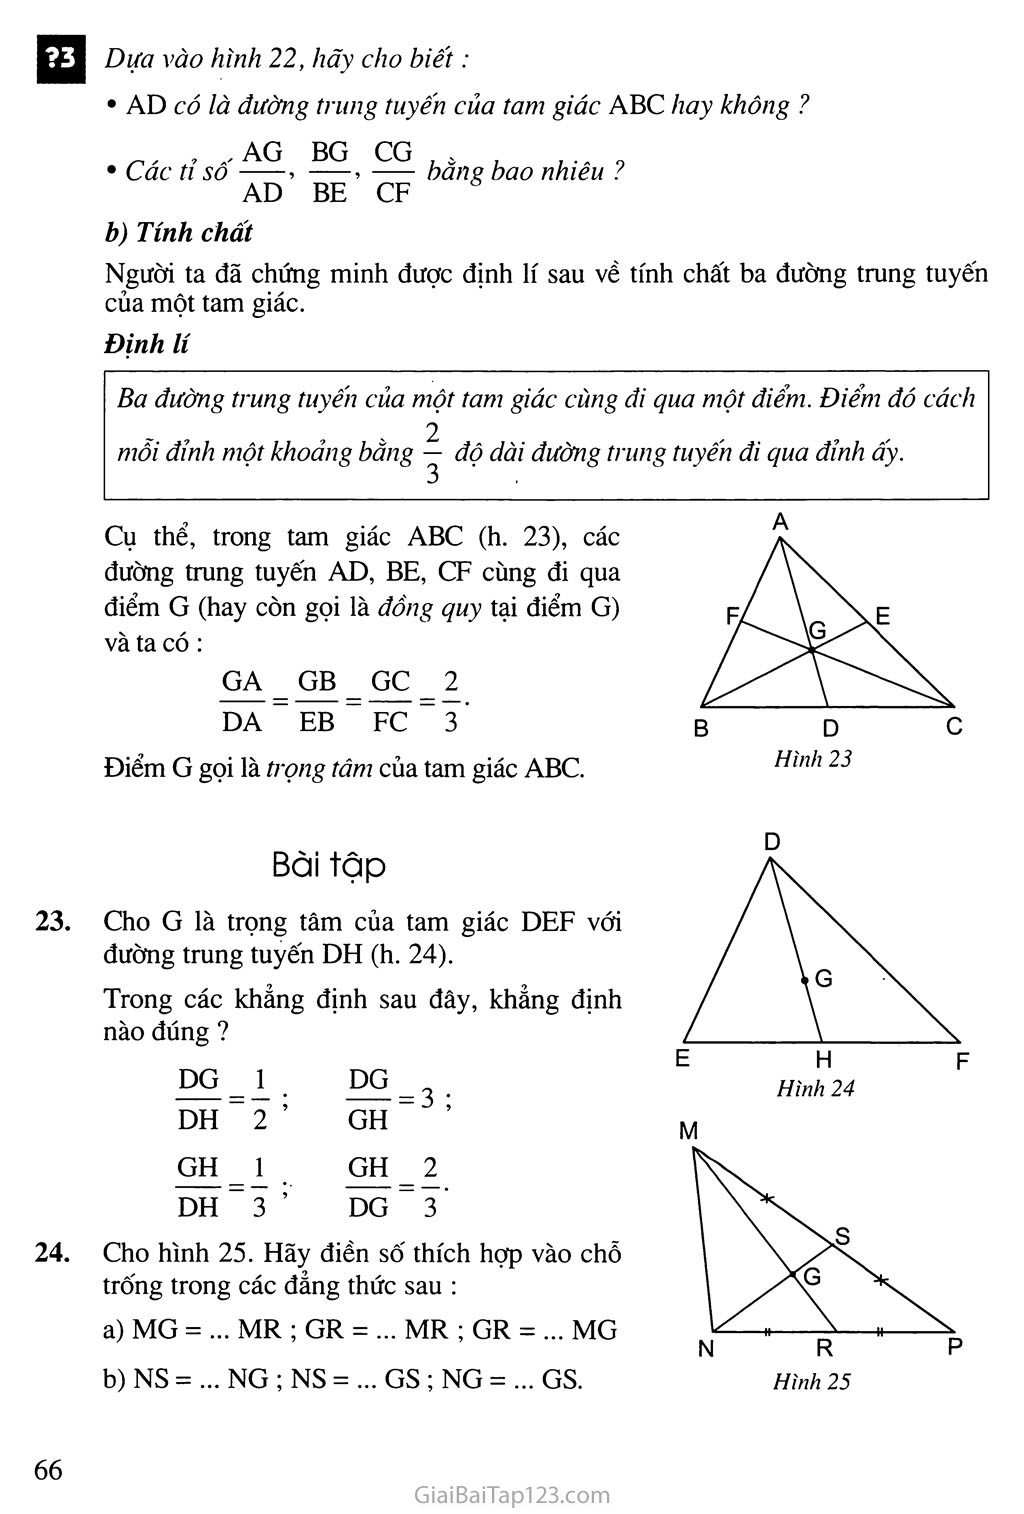 SGK Toán 7 - Bài 4. Tình chất ba đường trung tuyến của tam giác